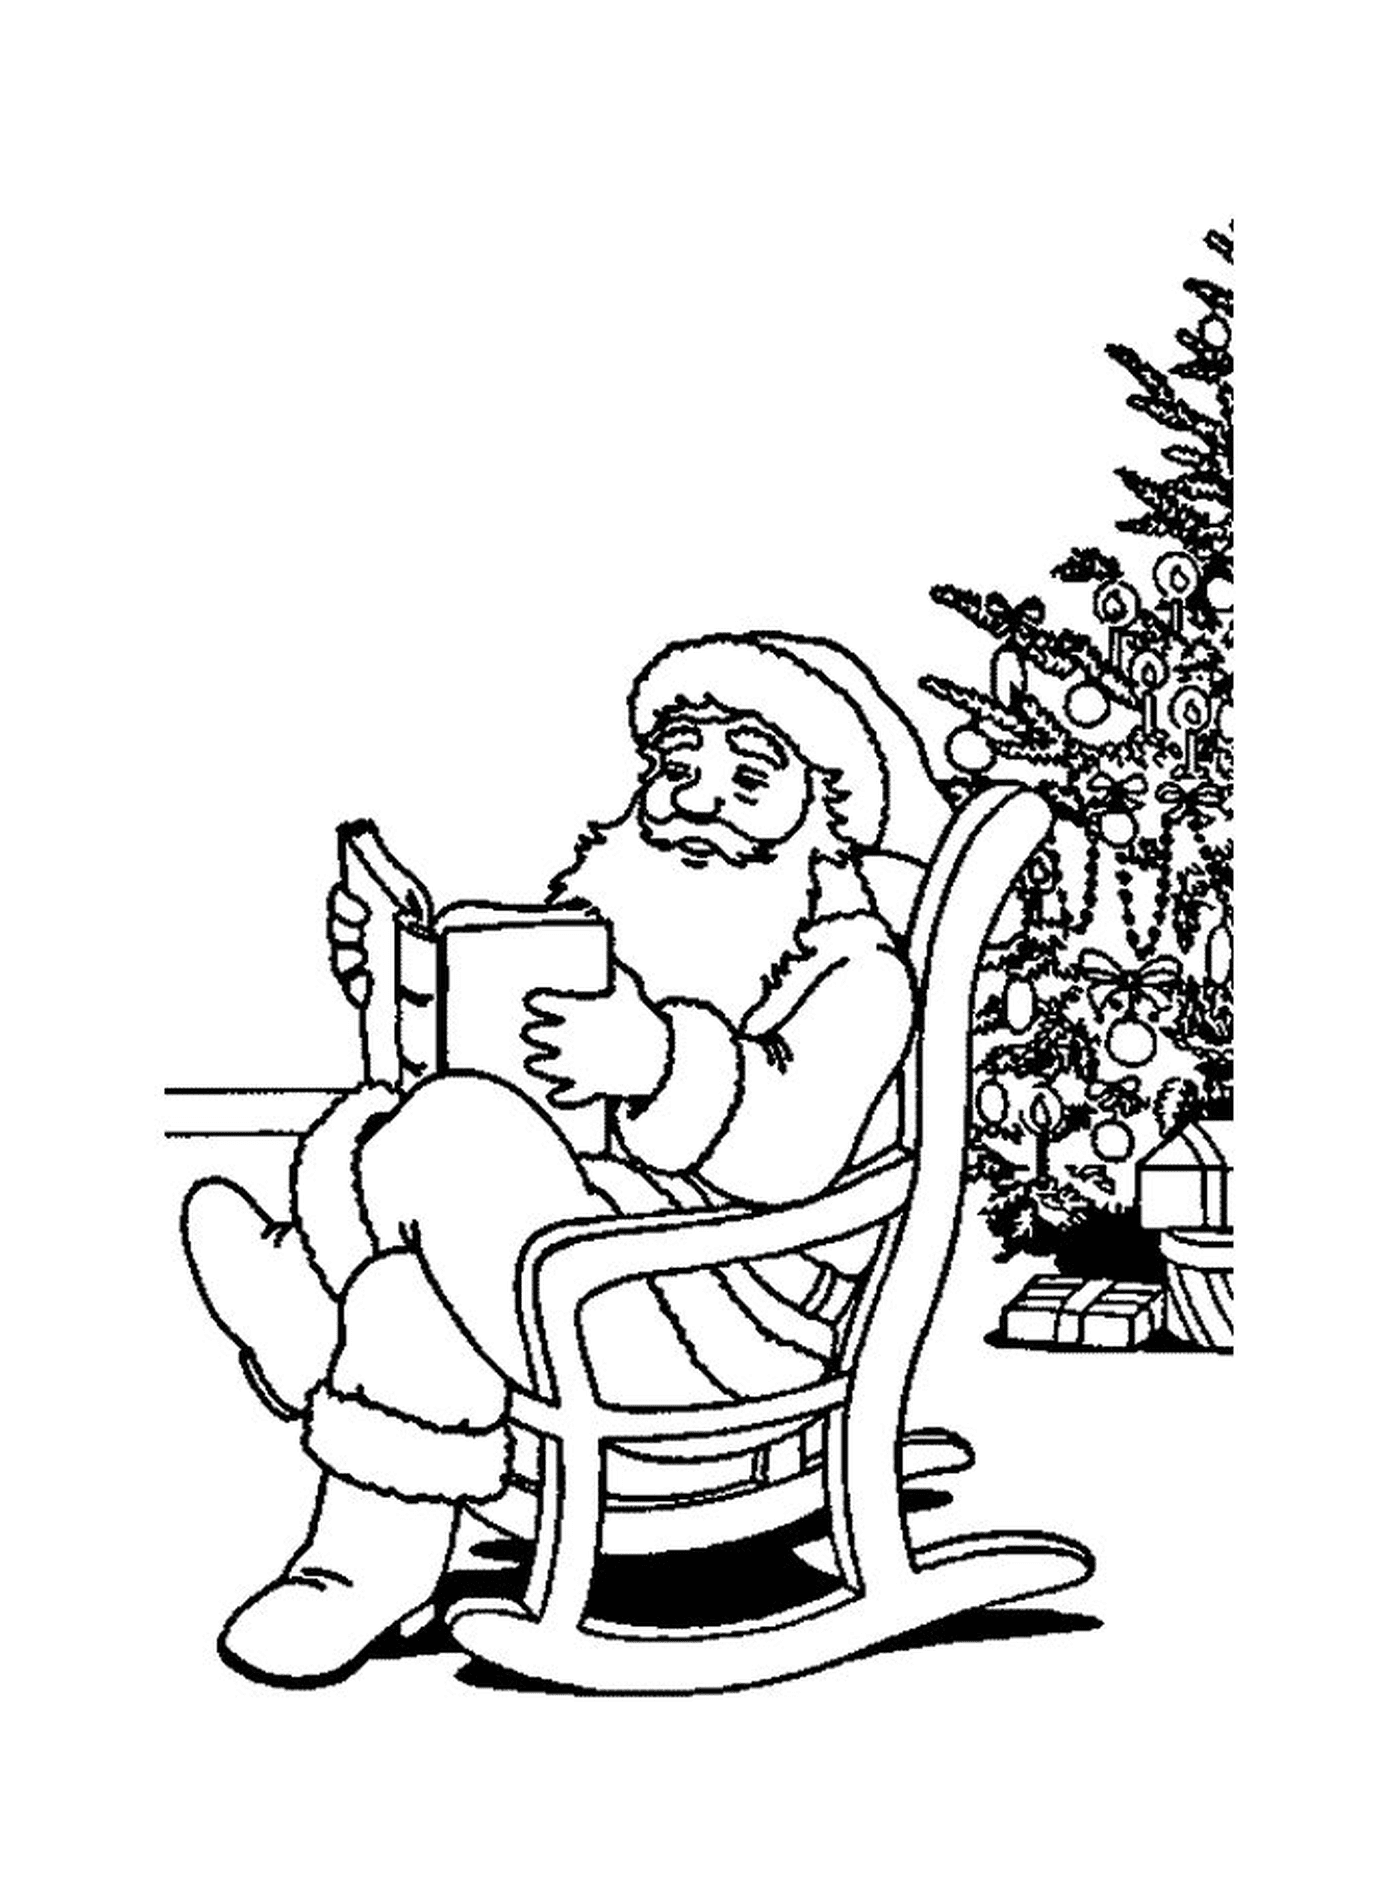   Père Noël lisant un livre près d'un sapin 